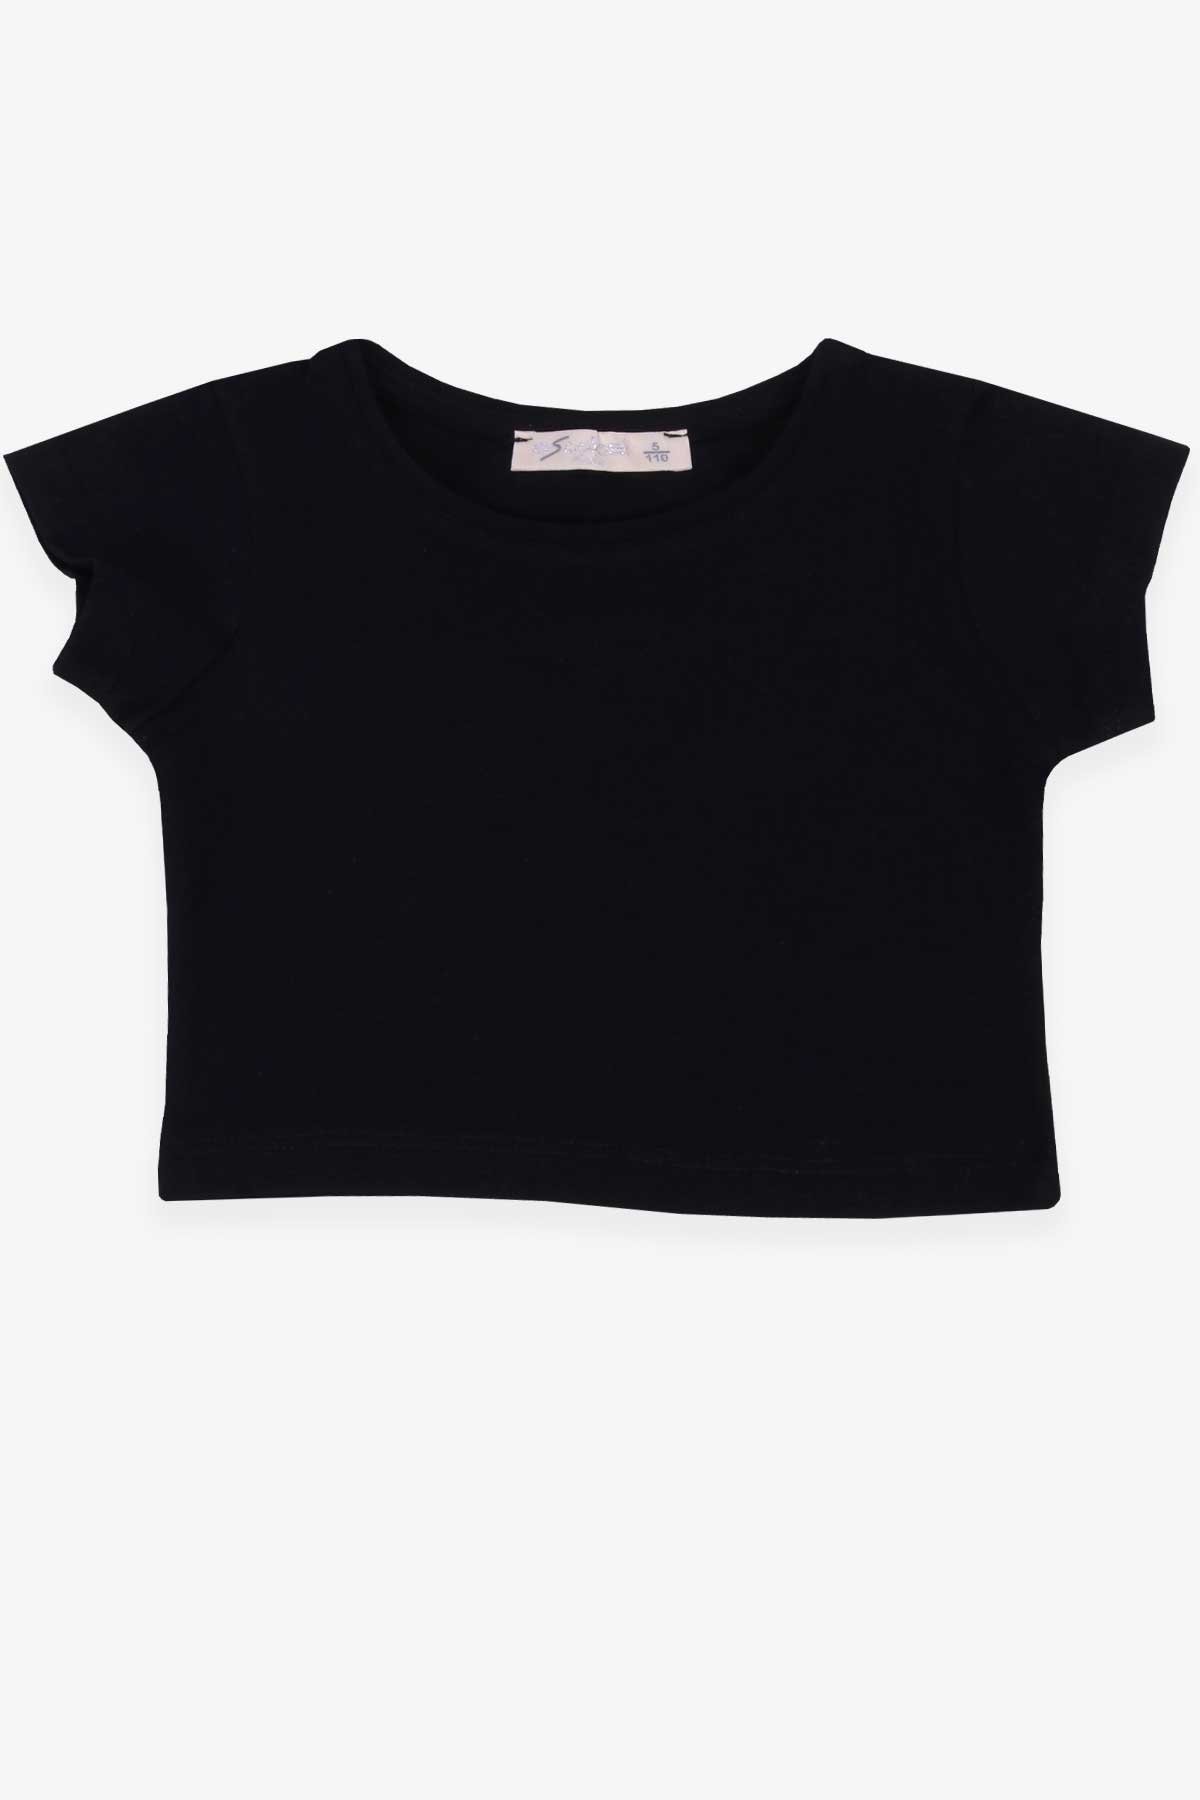 Kız Çocuk Tişört Basic Crop Top Siyah 5-14 Yaş - Breeze